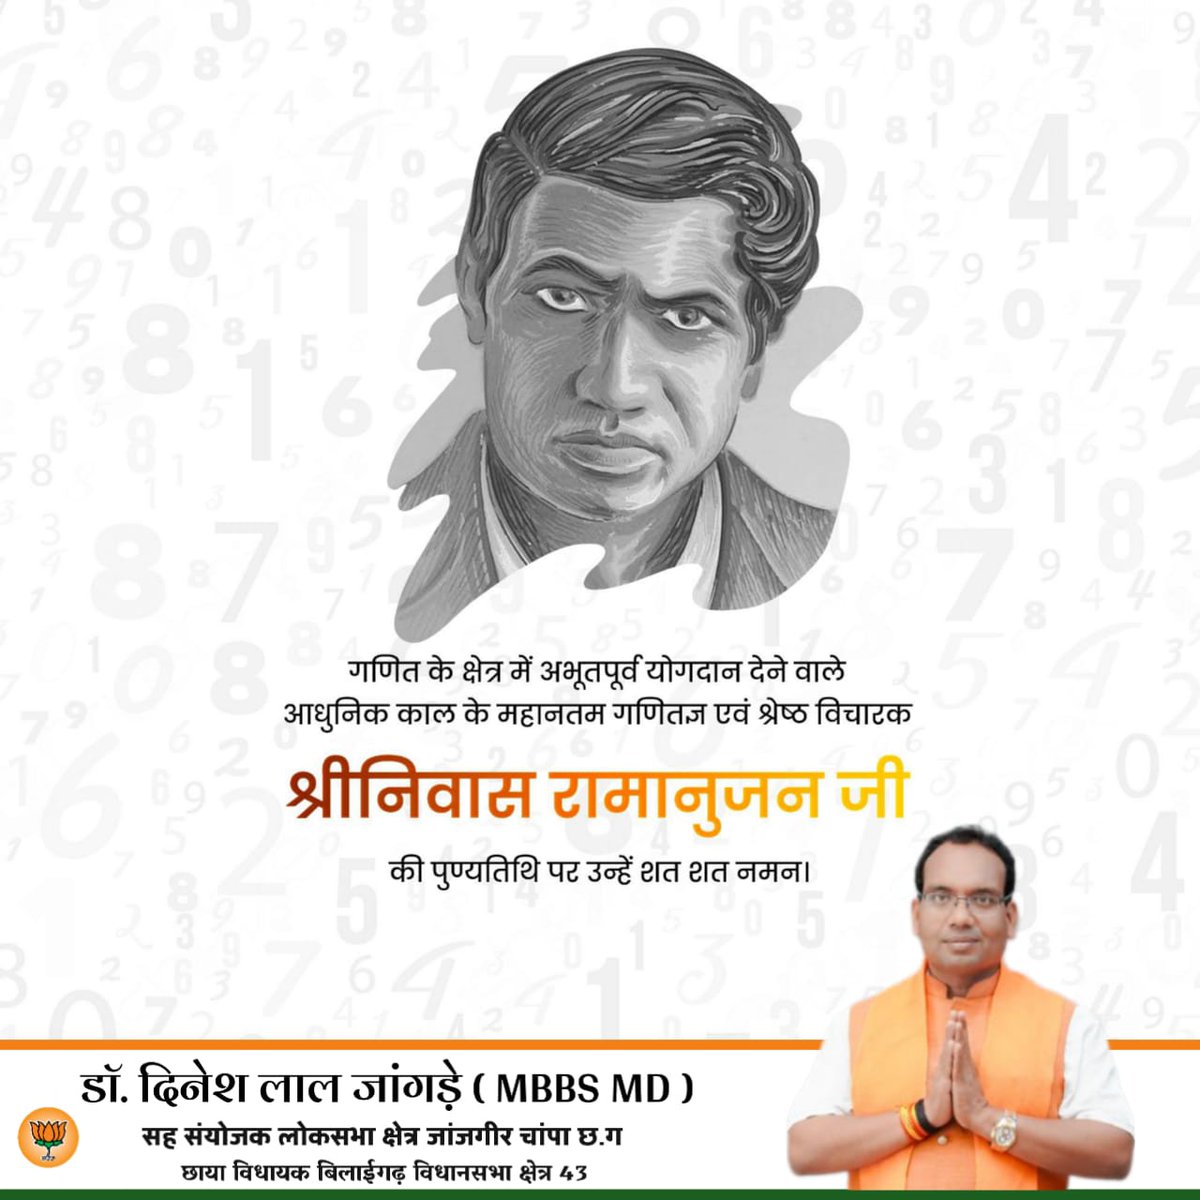 भारत के महान गणितज्ञ, अपनी प्रतिभा से गणित को नया आयाम देने वाले #श्रीनिवास_रामानुजन जी की पुण्यतिथि पर उन्हें सादर नमन।🙏

#SrinivasaRamanujan